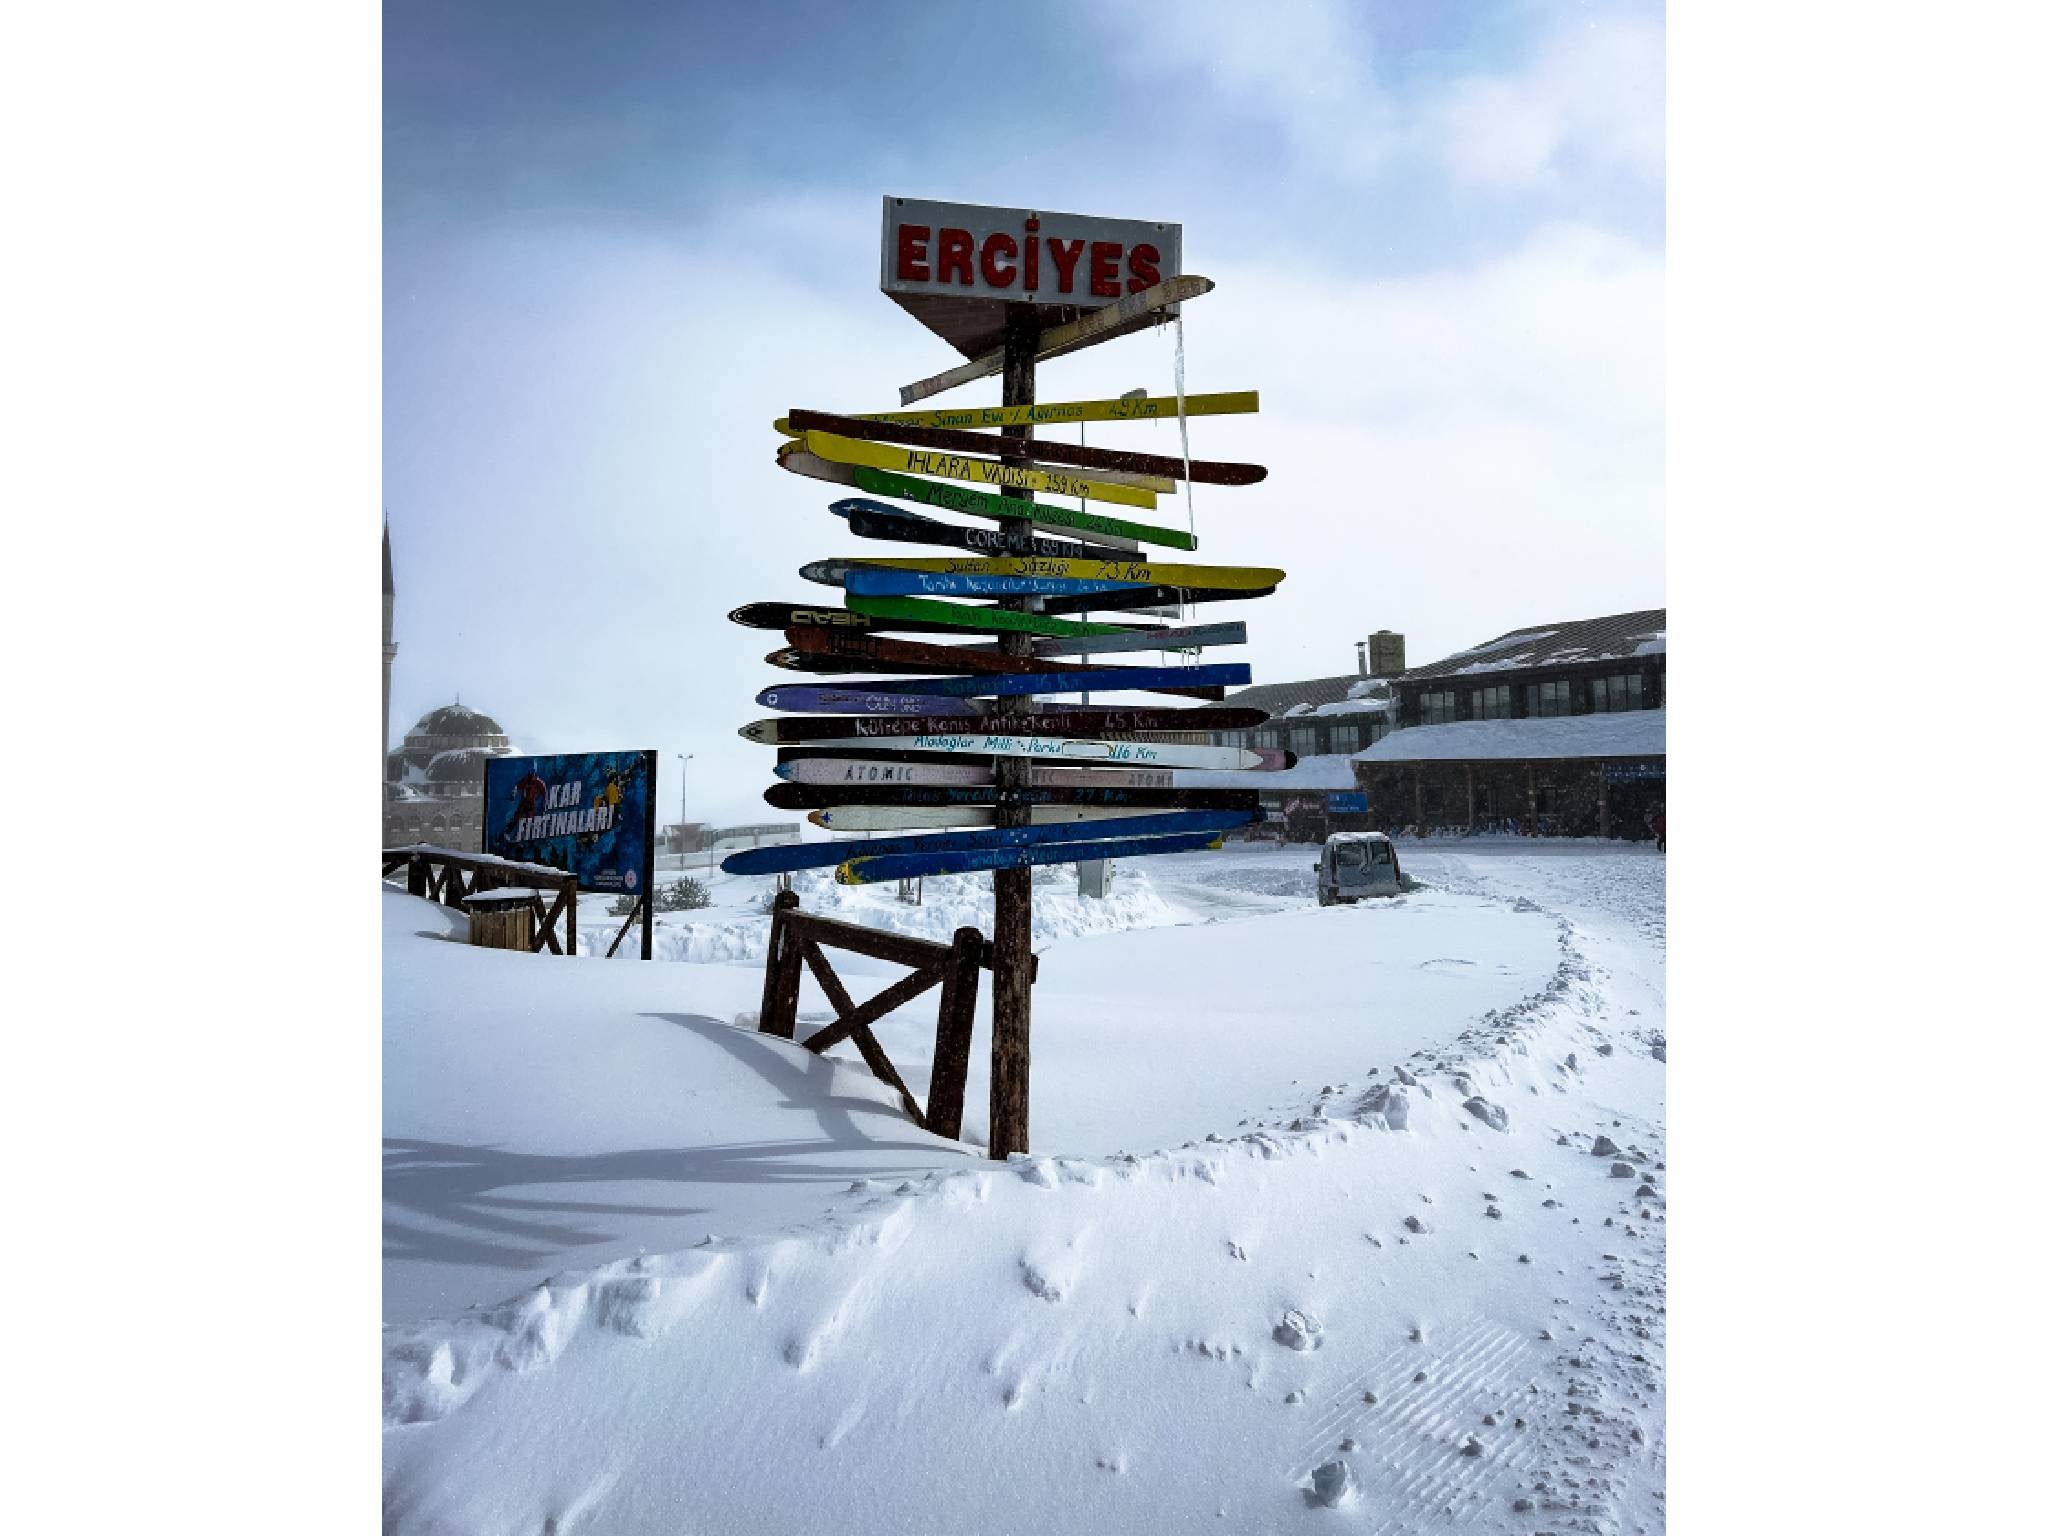 Erciyes ski resort boasts 150km of pistes